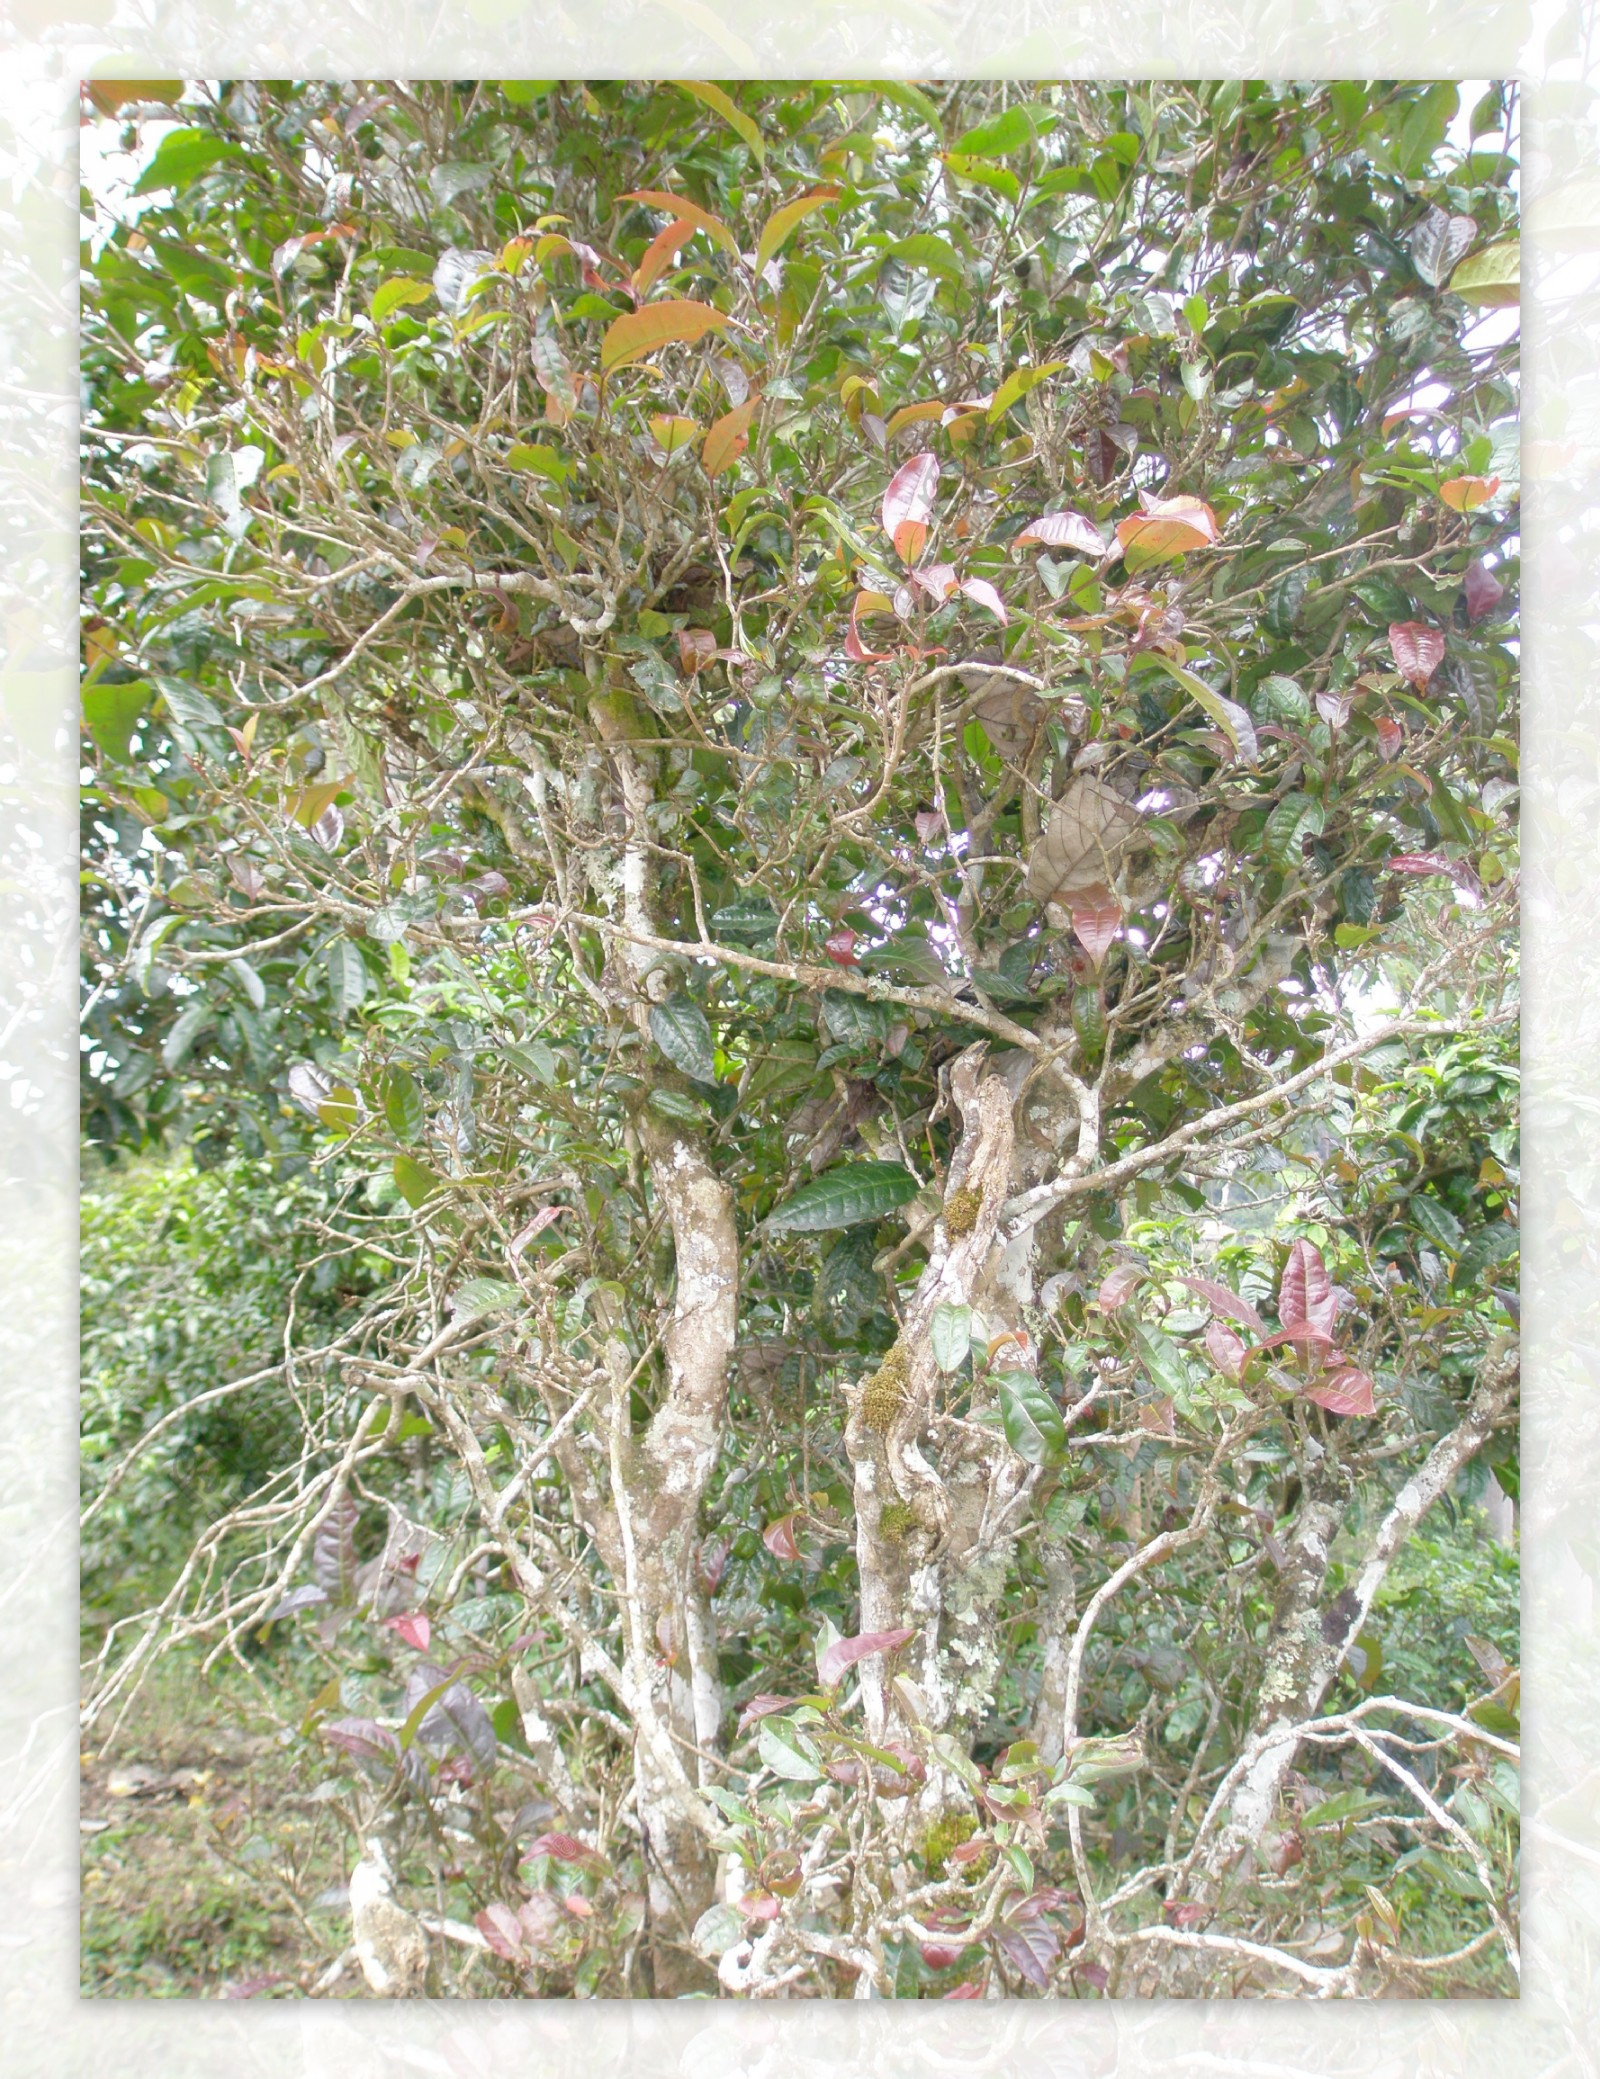 树木树叶图片